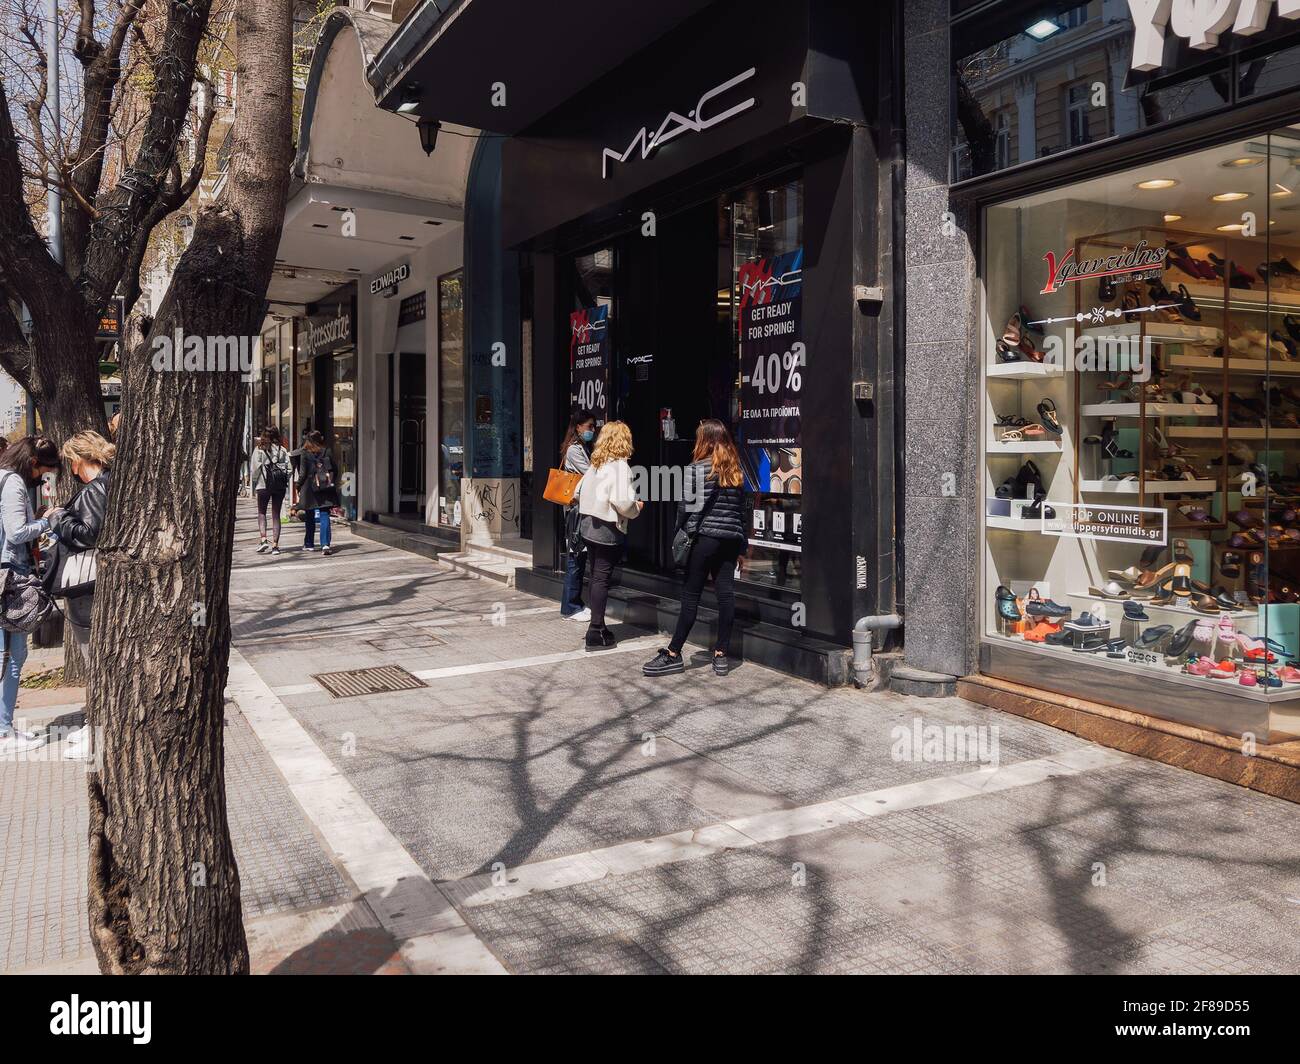 Thessaloniki, Griechenland - April 12 2021: Klicken Sie auf und sammeln Sie den offenen Ladeneingang mit wartenden Kunden. Schaufensterpräsentation von Ladenverkäufen mit einer Click-Away-Option aufgrund von covid-19-Sicherheitsvorkehrungen. Stockfoto